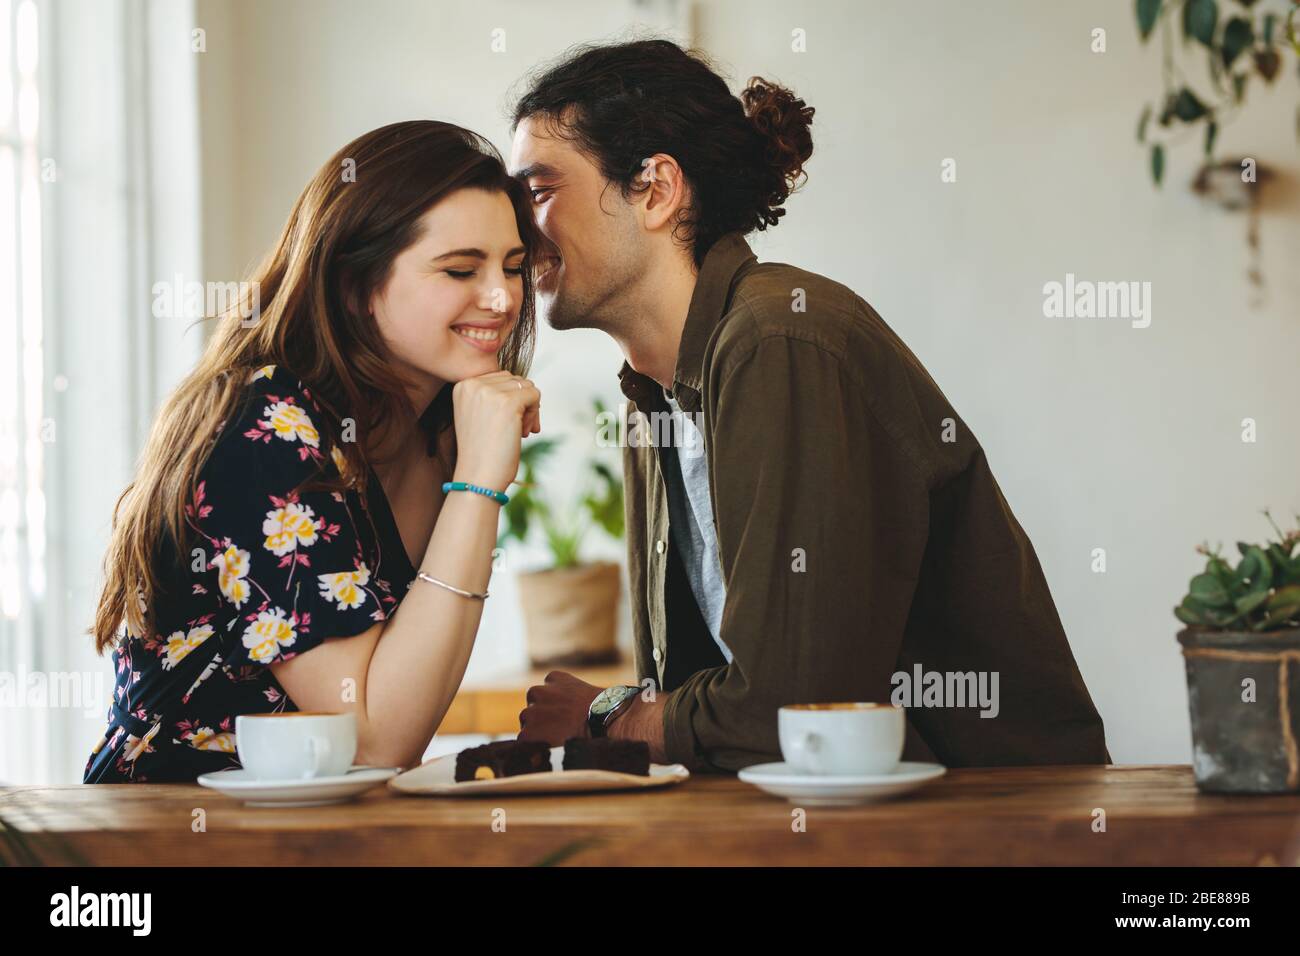 Beau couple aimant assis dans un café en appréciant dans une conversation. L'homme murmure affectueusement dans l'oreille de sa petite amie à une table de café. Banque D'Images